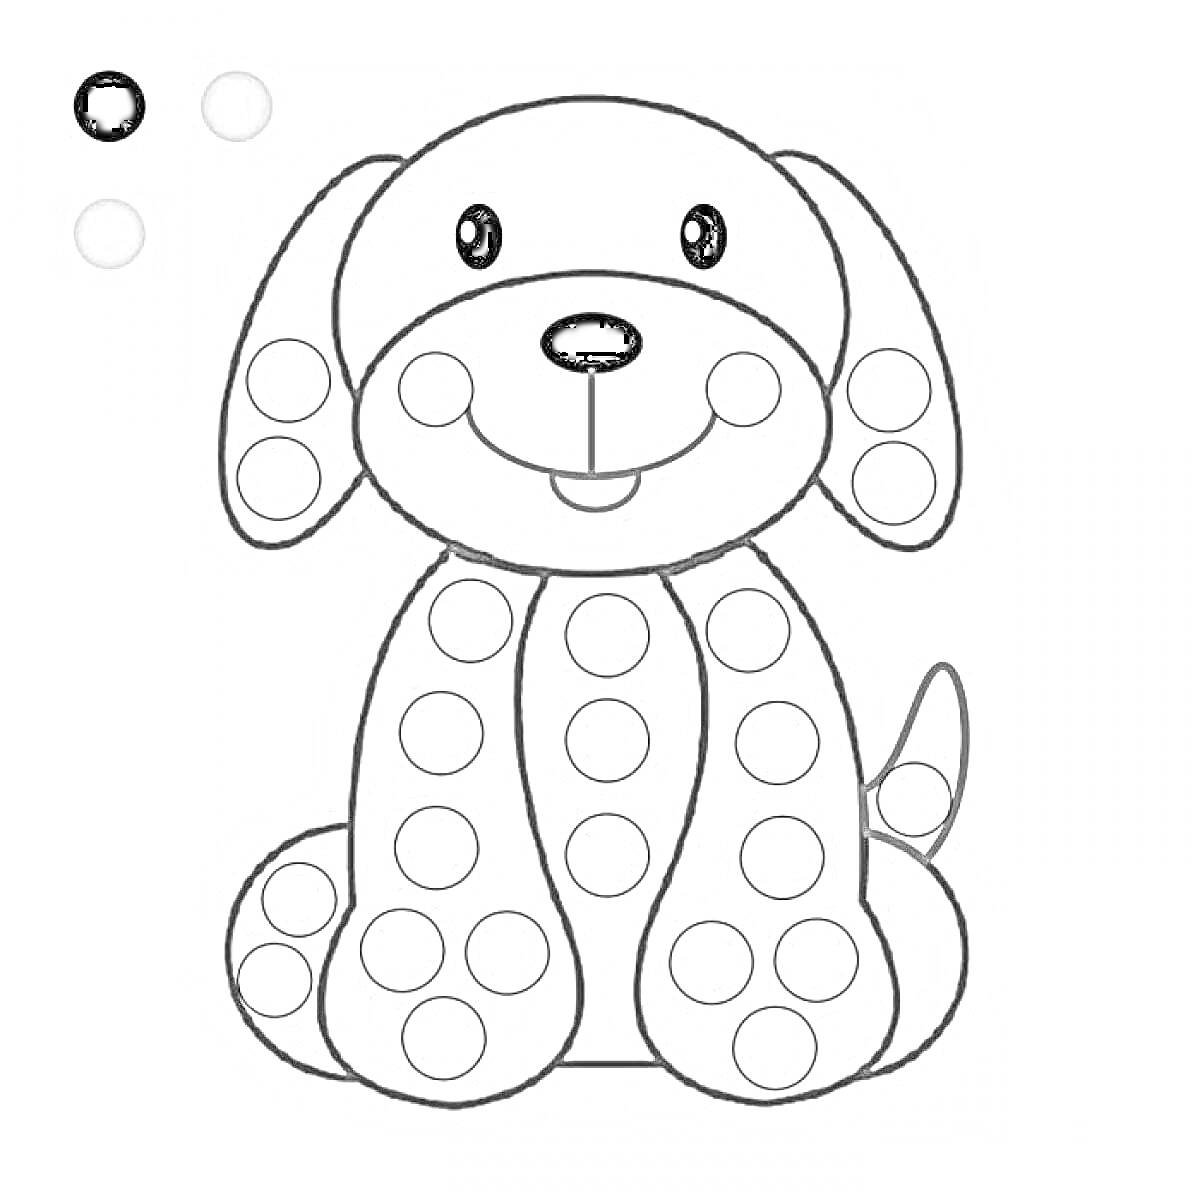 Раскраска Собачка с кругами для пальчикового рисования